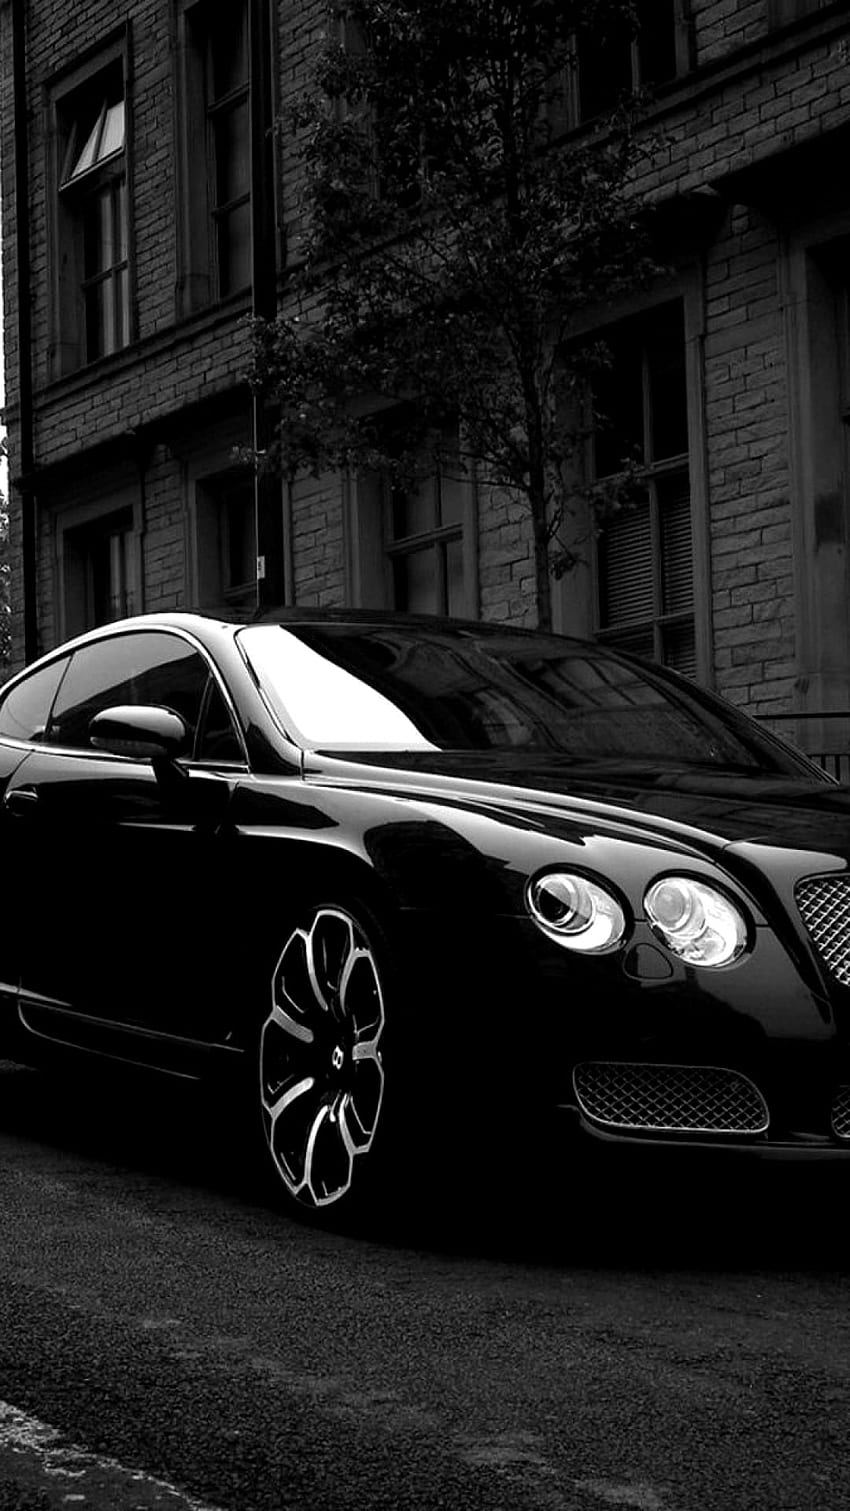 Bentley iPhone Ideas. Bentley continental gt, Bentley car, Bentley HD phone wallpaper